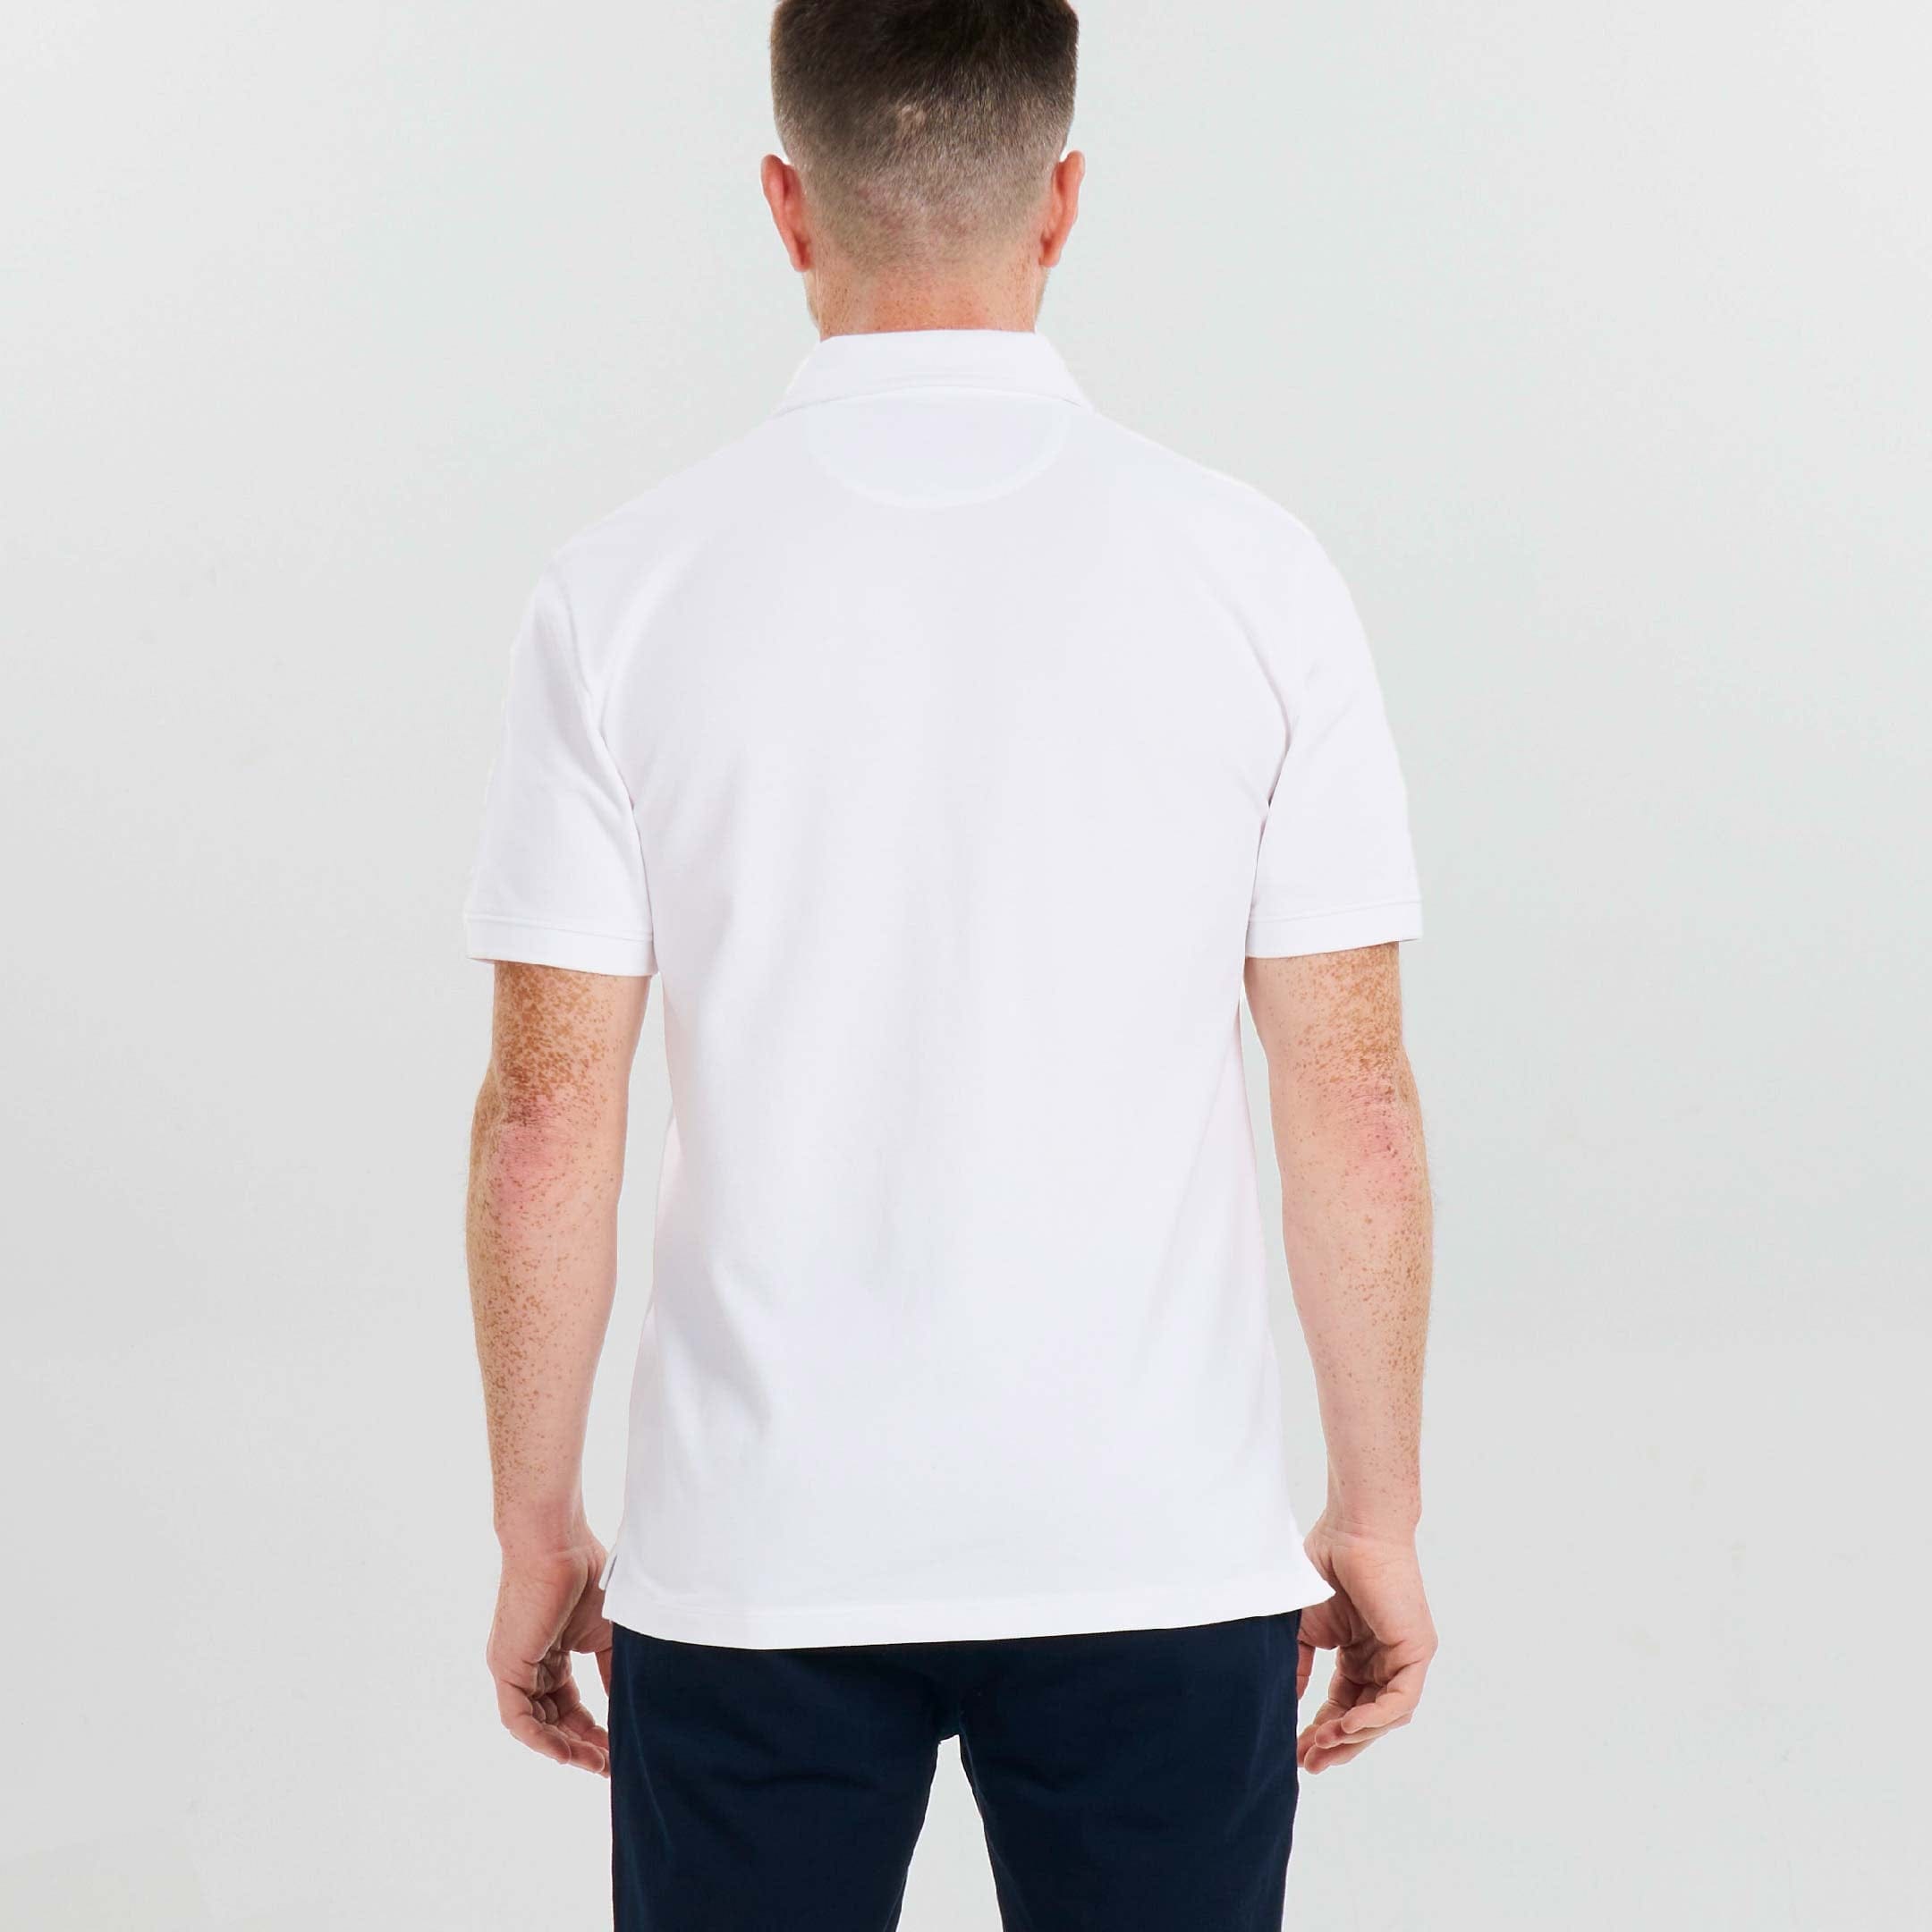 Ash & Erie White Pique Polo Shirt for Short Men   Short Sleeve Polo Shirt